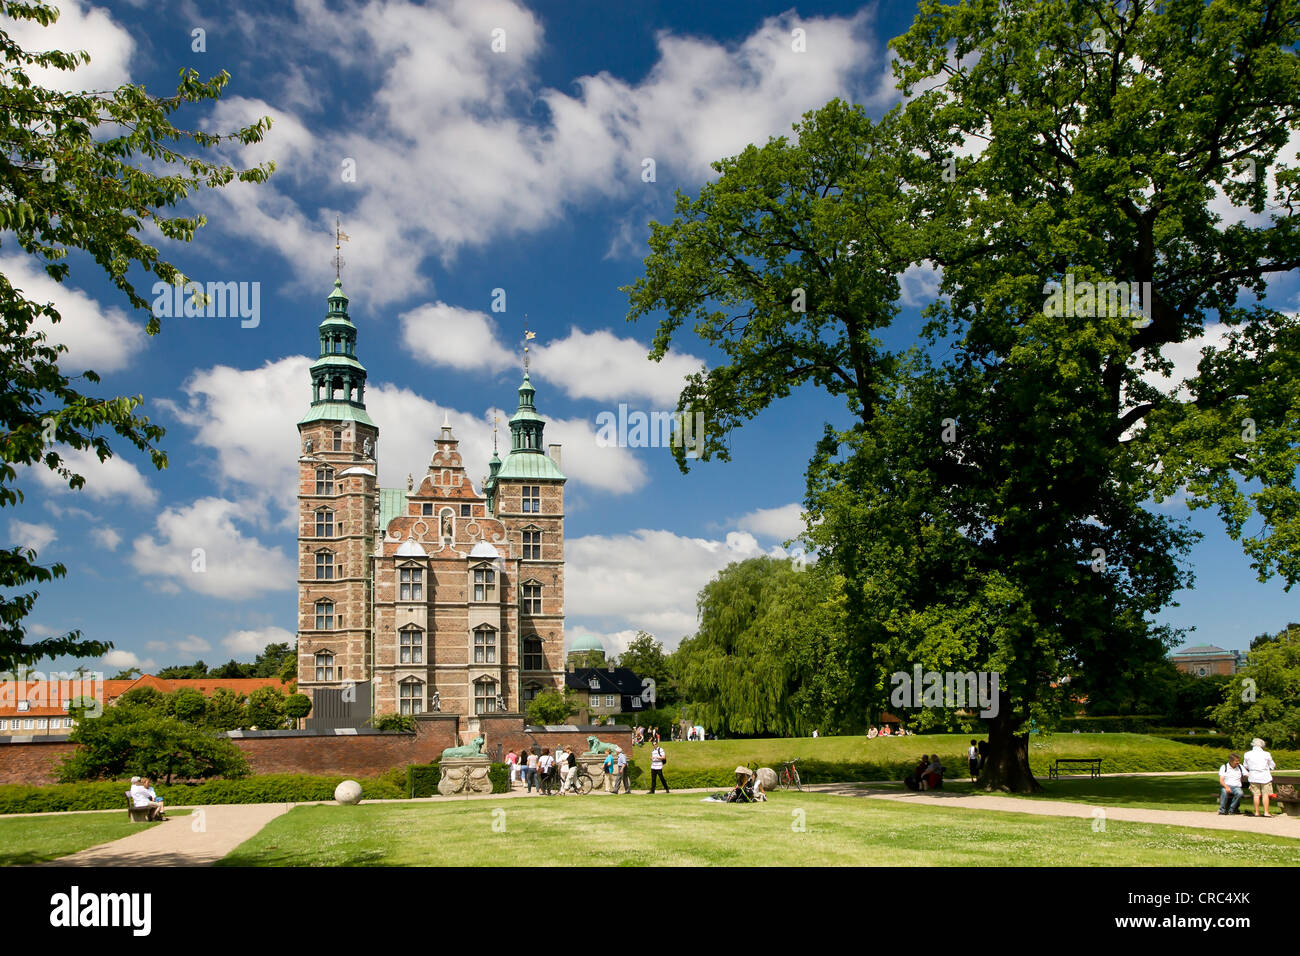 Rosenborg Castle, Copenhagen, Denmark, Europe Stock Photo